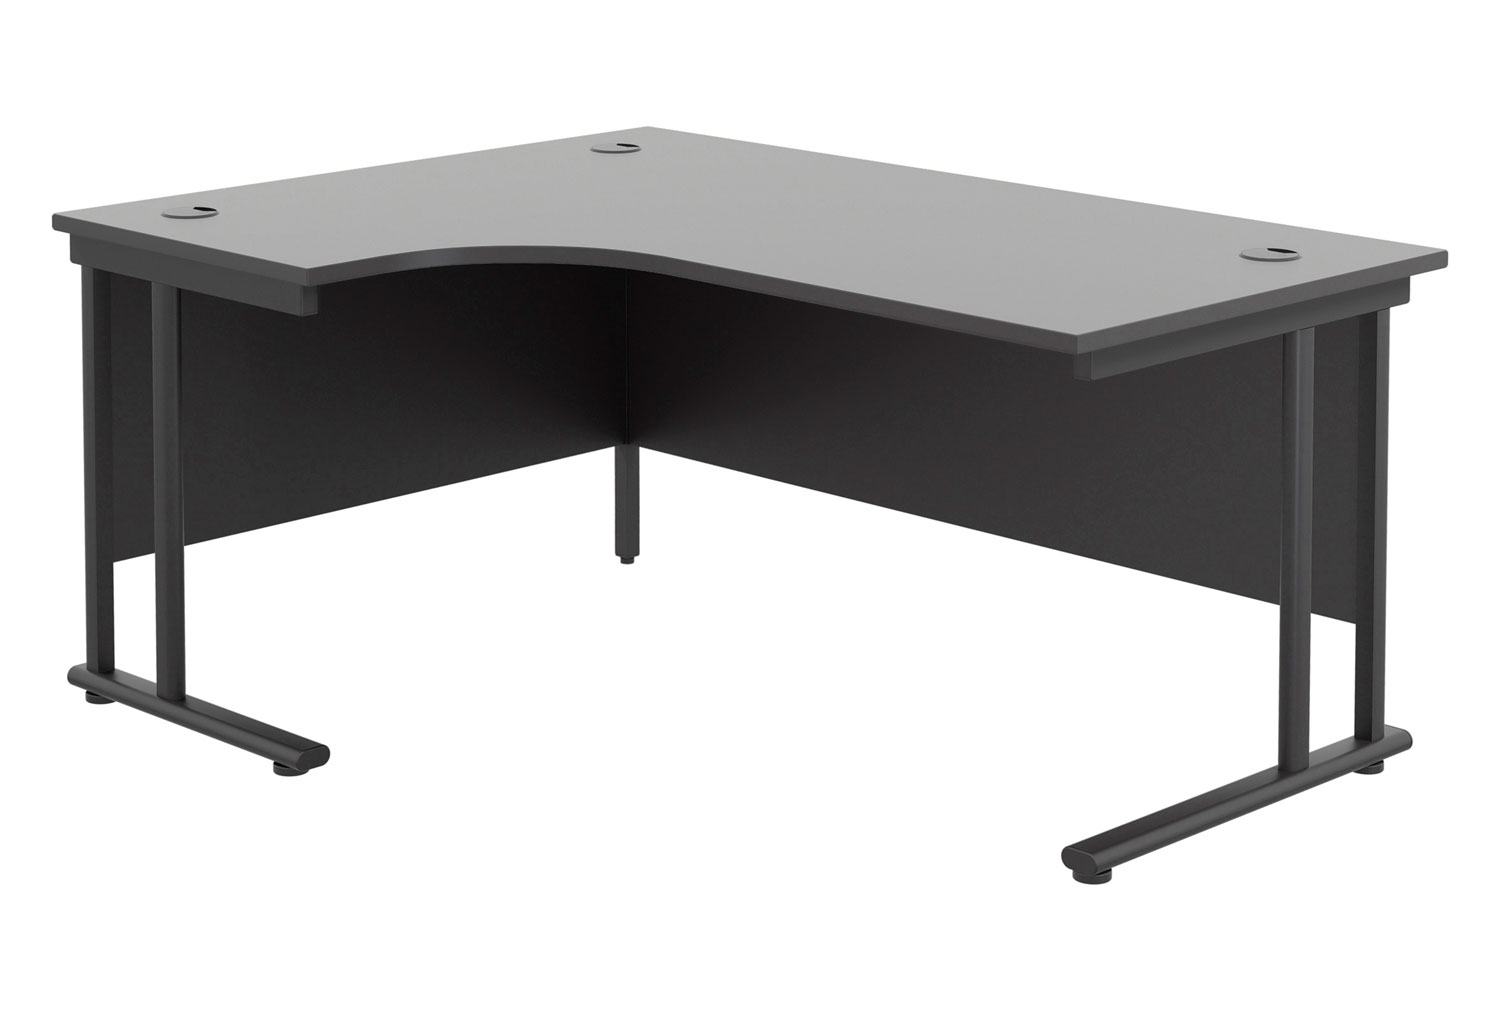 All Black Double C-Leg Left Hand Ergonomic Office Desk, 180wx120/80dx73h (cm), Express Delivery